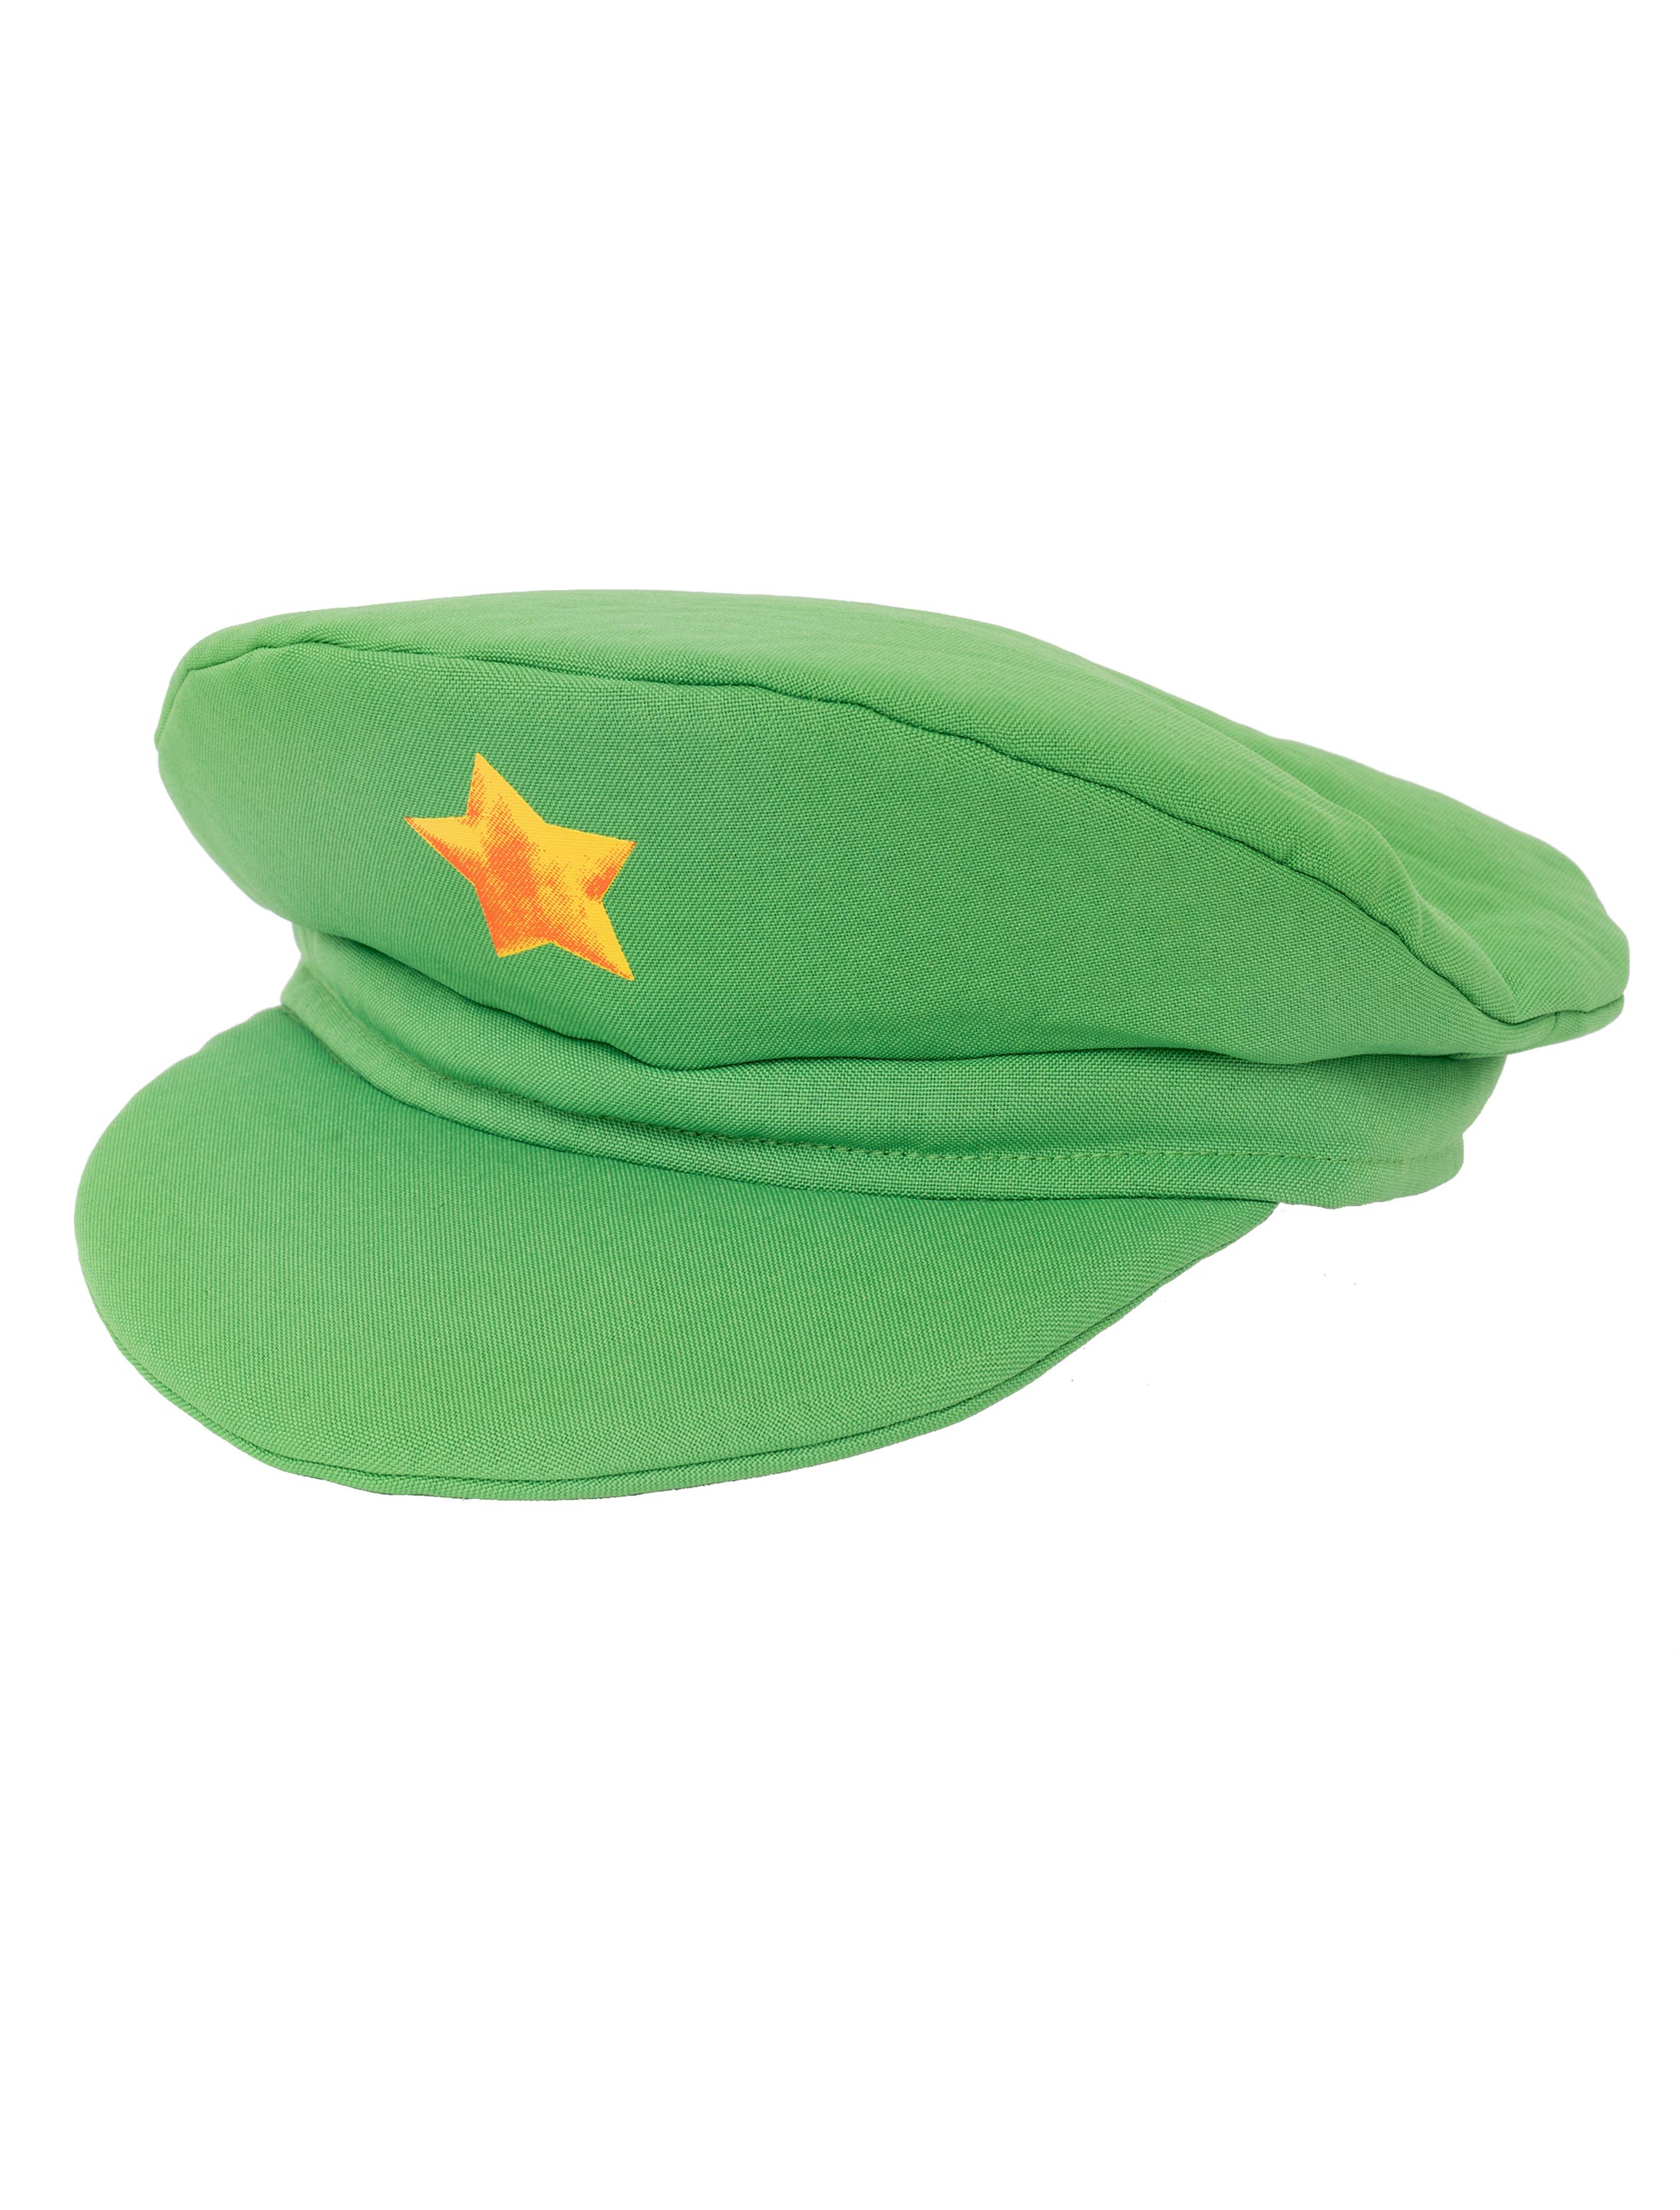 Mütze mit Stern grün one size